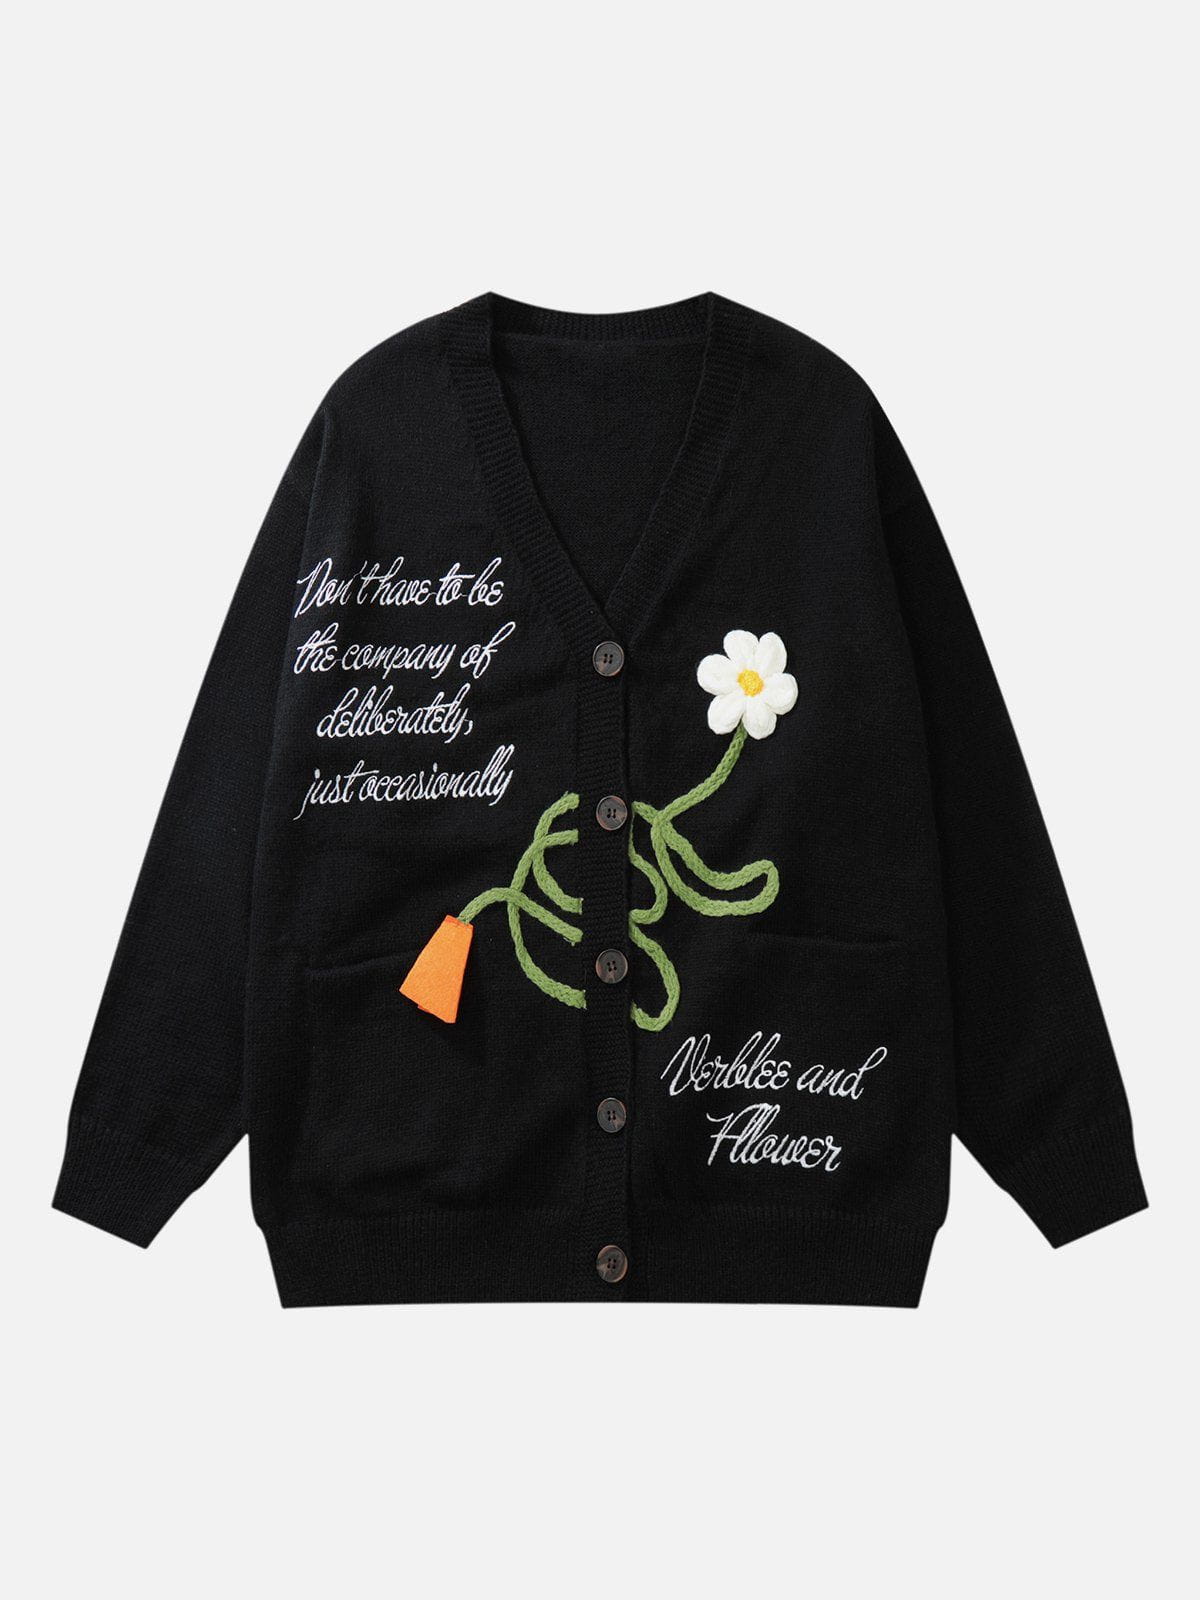 Eprezzy® - Flower Embroidery Graphic Cardigan Streetwear Fashion - eprezzy.com